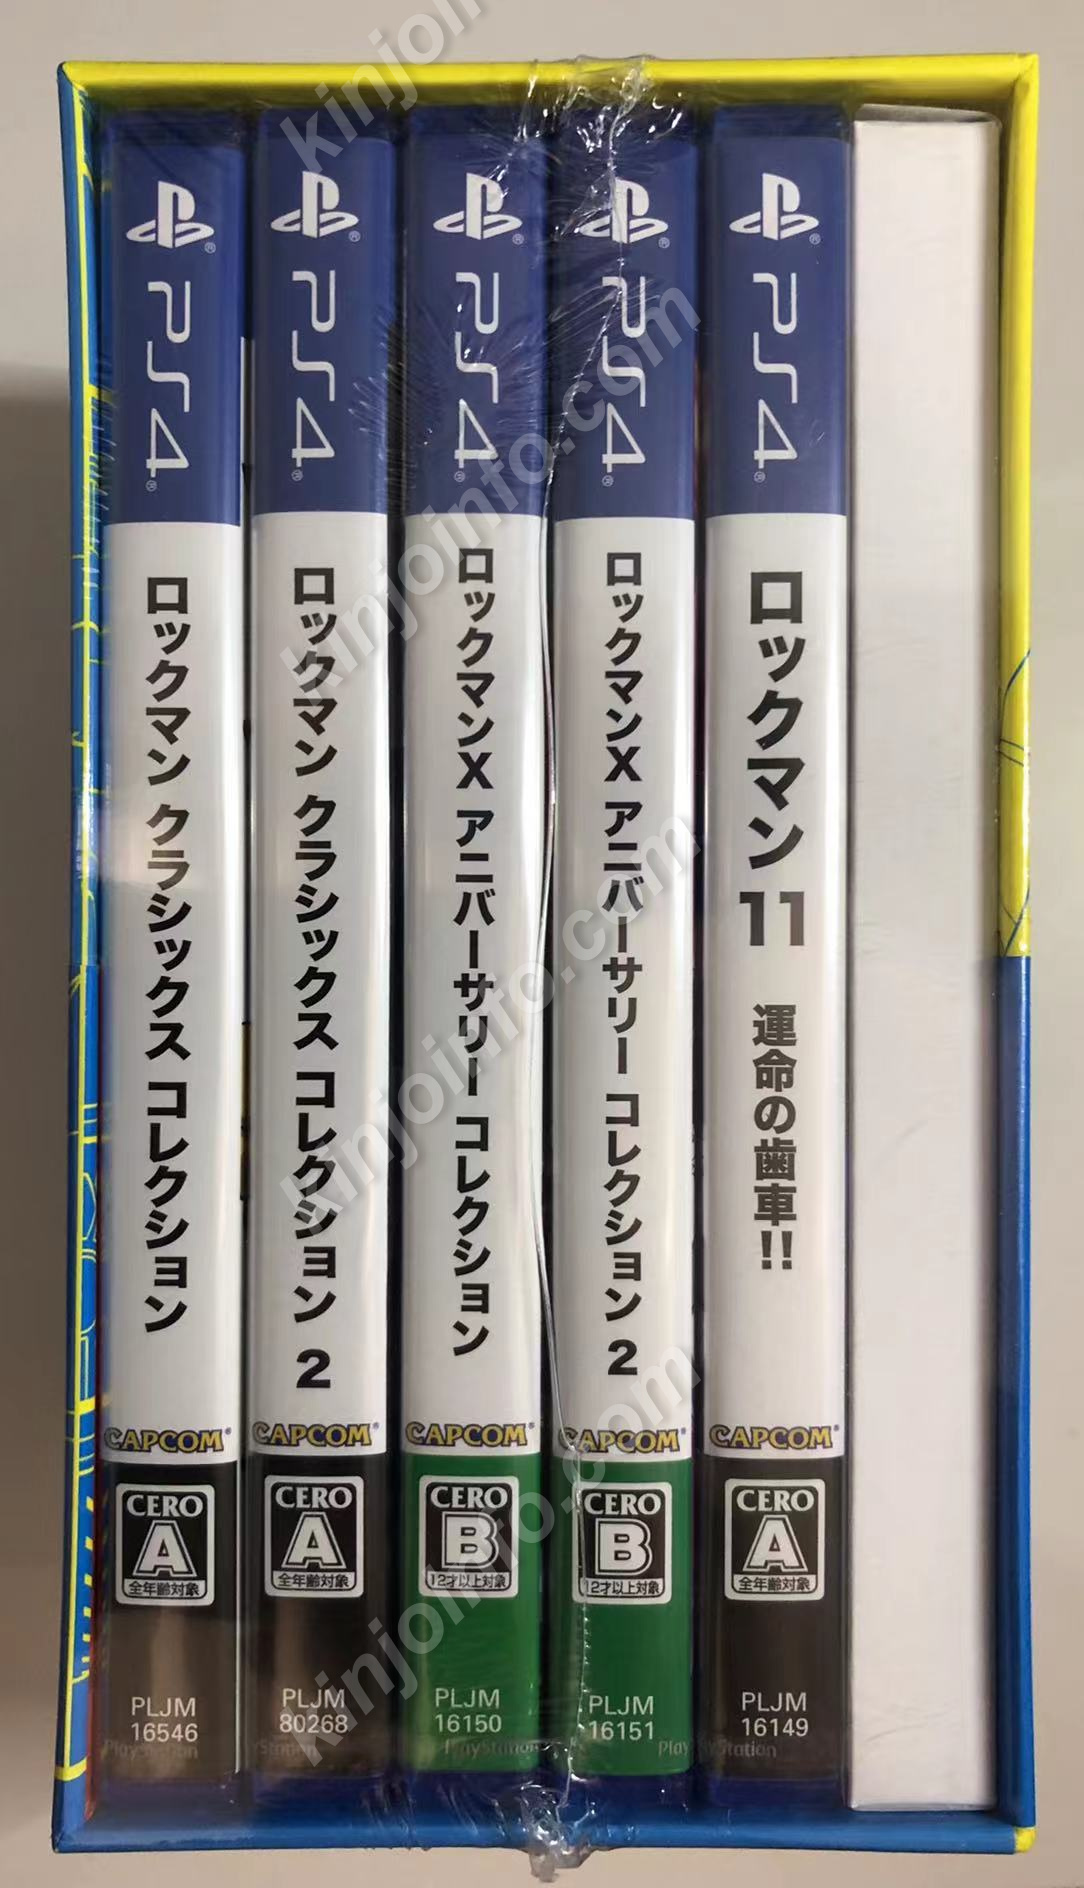 ロックマン&ロックマンX 5in1 スペシャルBOX【新品・PS4日本版 